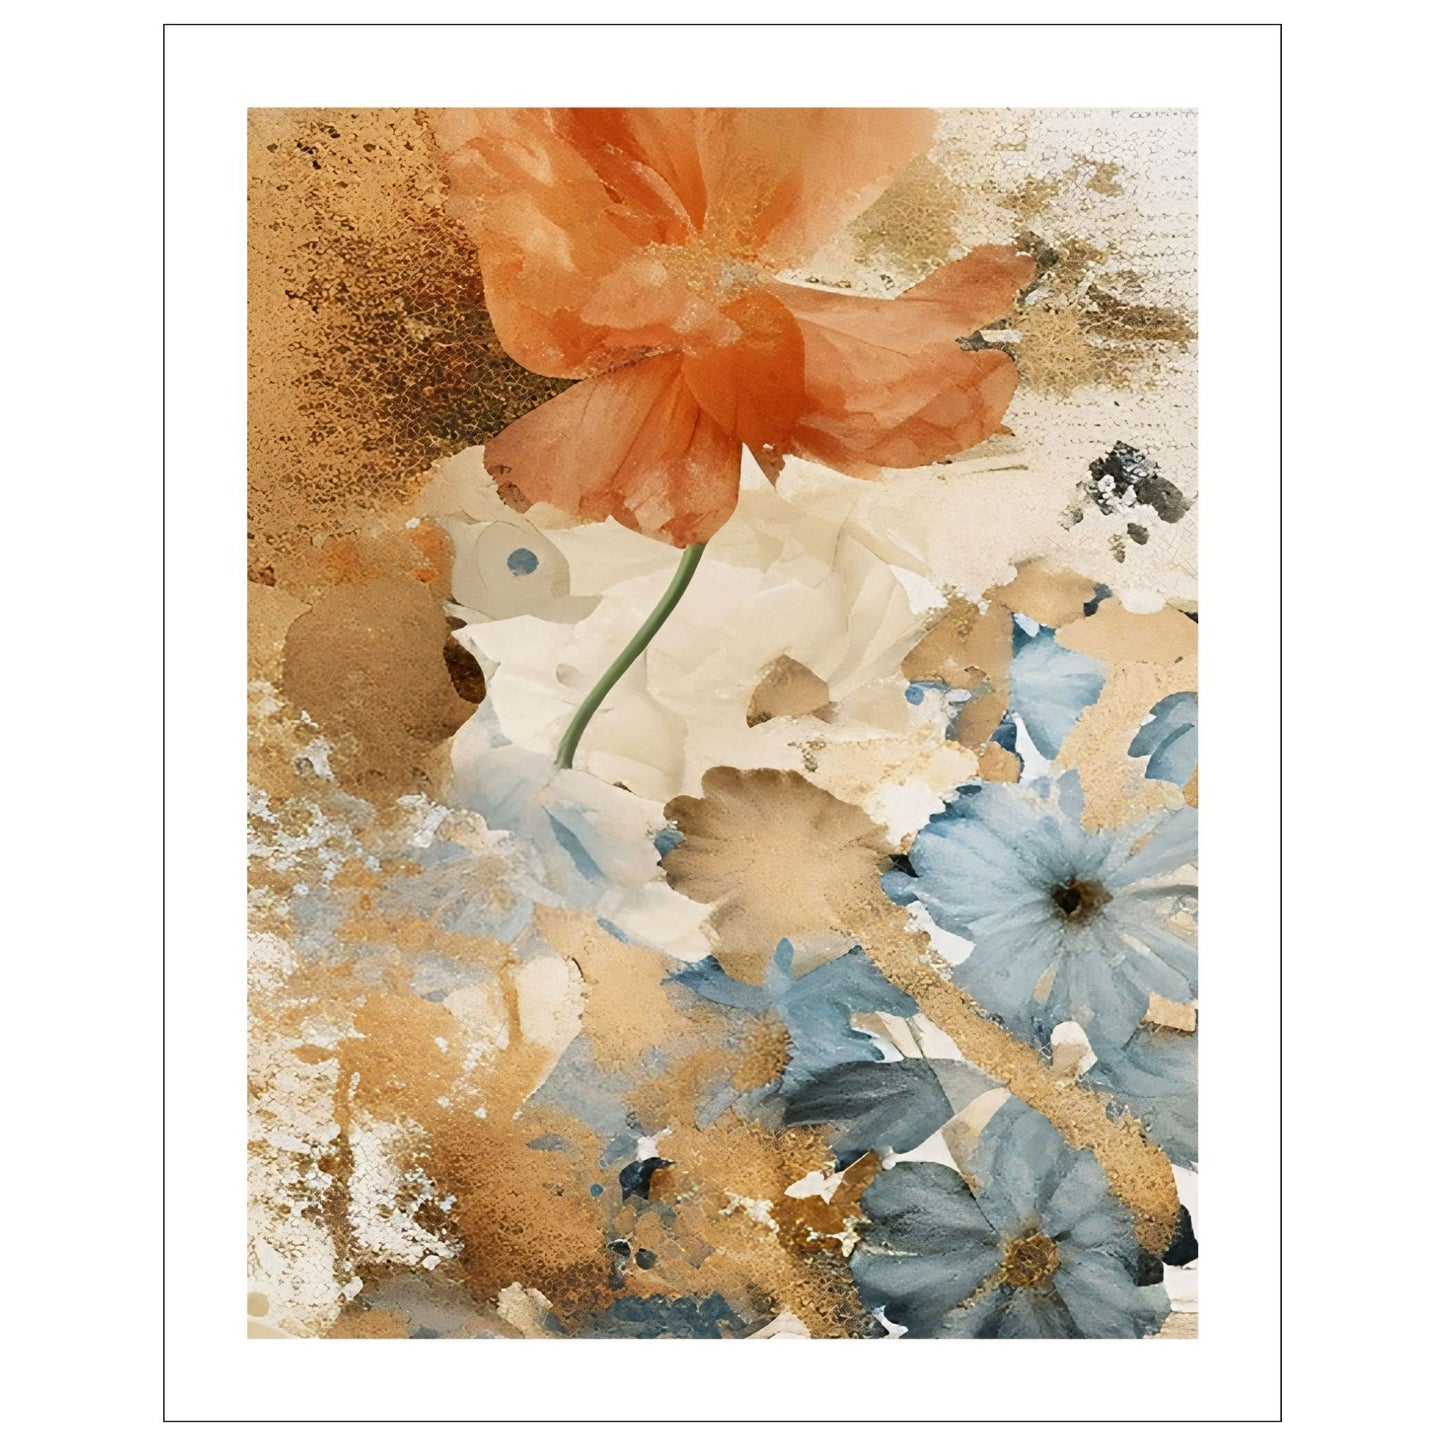 Abstract Floral grafisk akvarell i duse fargenyanser i rust, lyseblått og beige. Plakaten har en hvit, dekorativ kant.